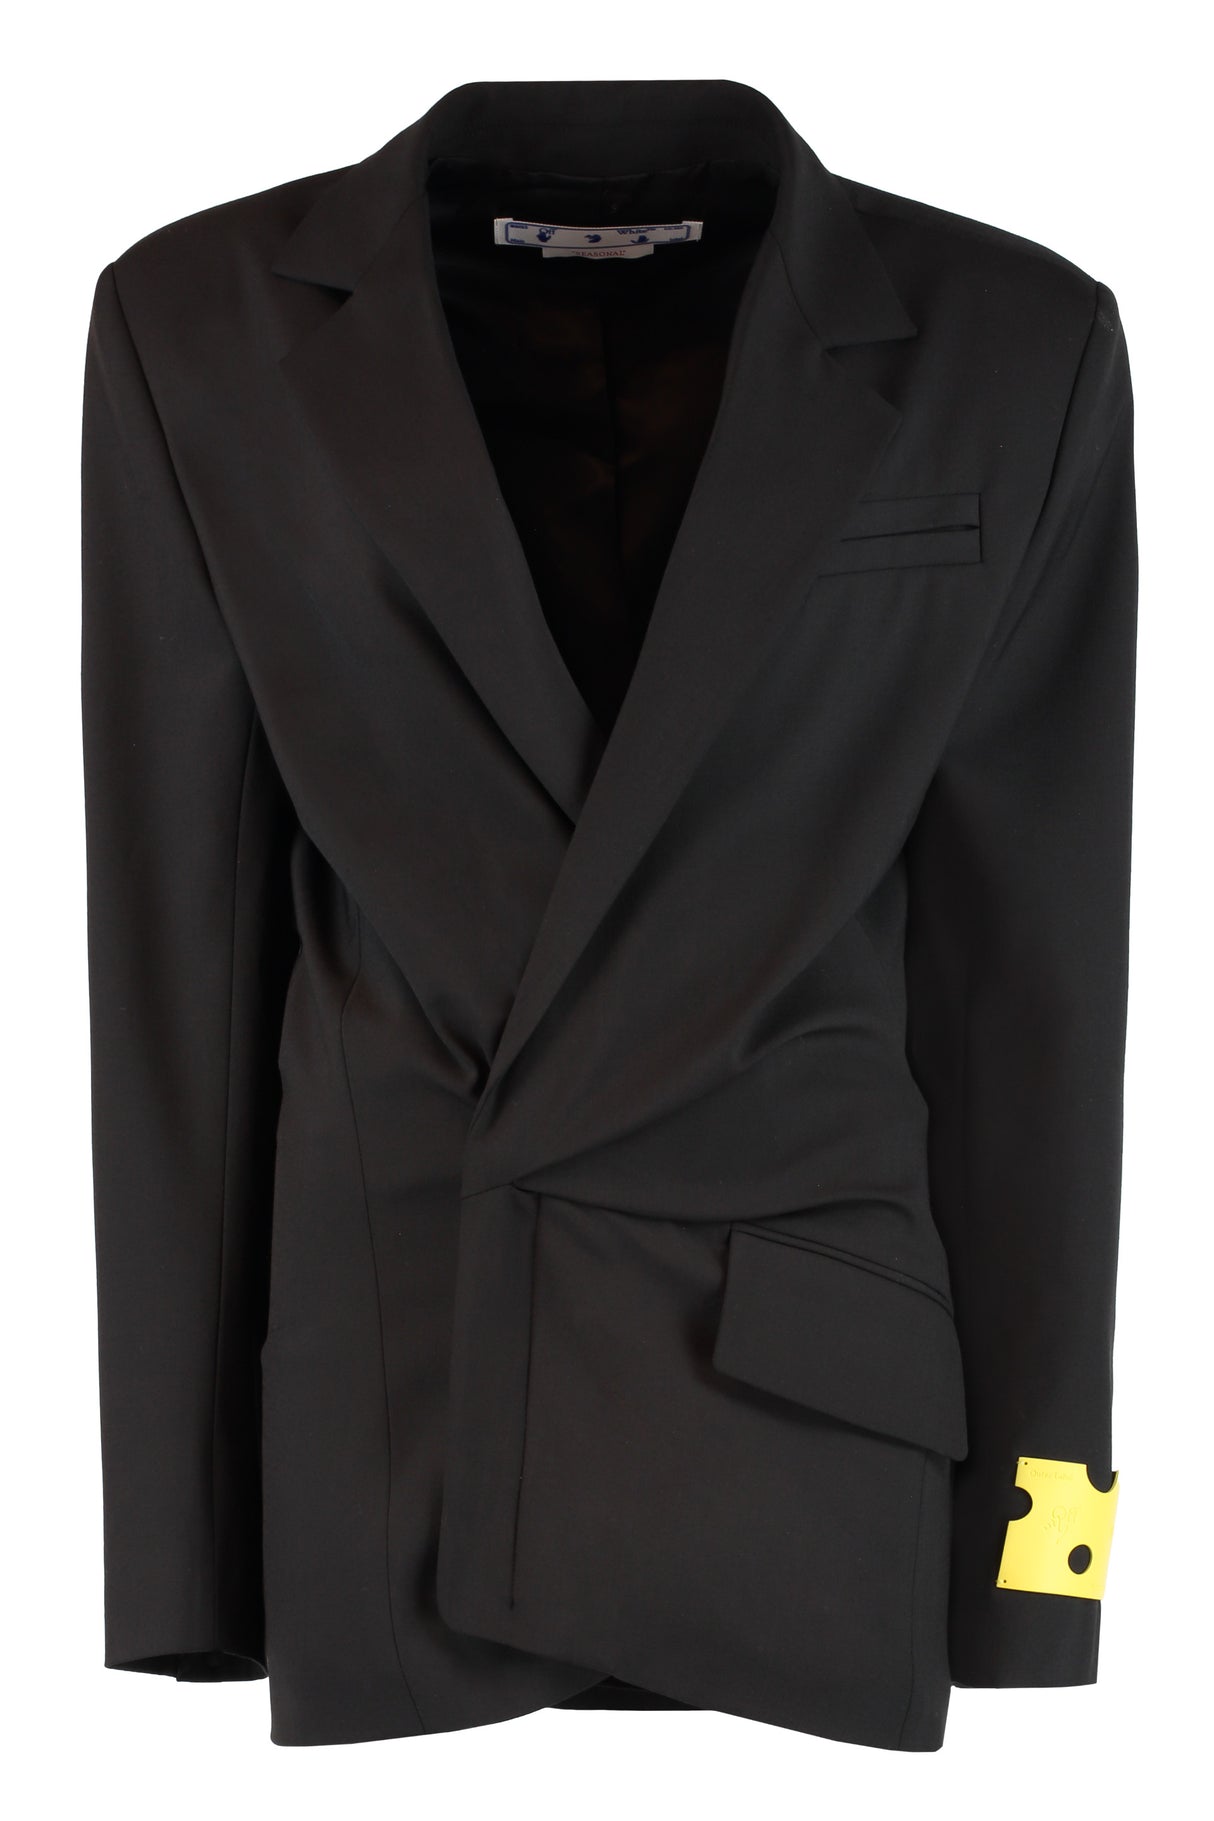 فستان بليزر غير متماثل للنساء - أسود FW22